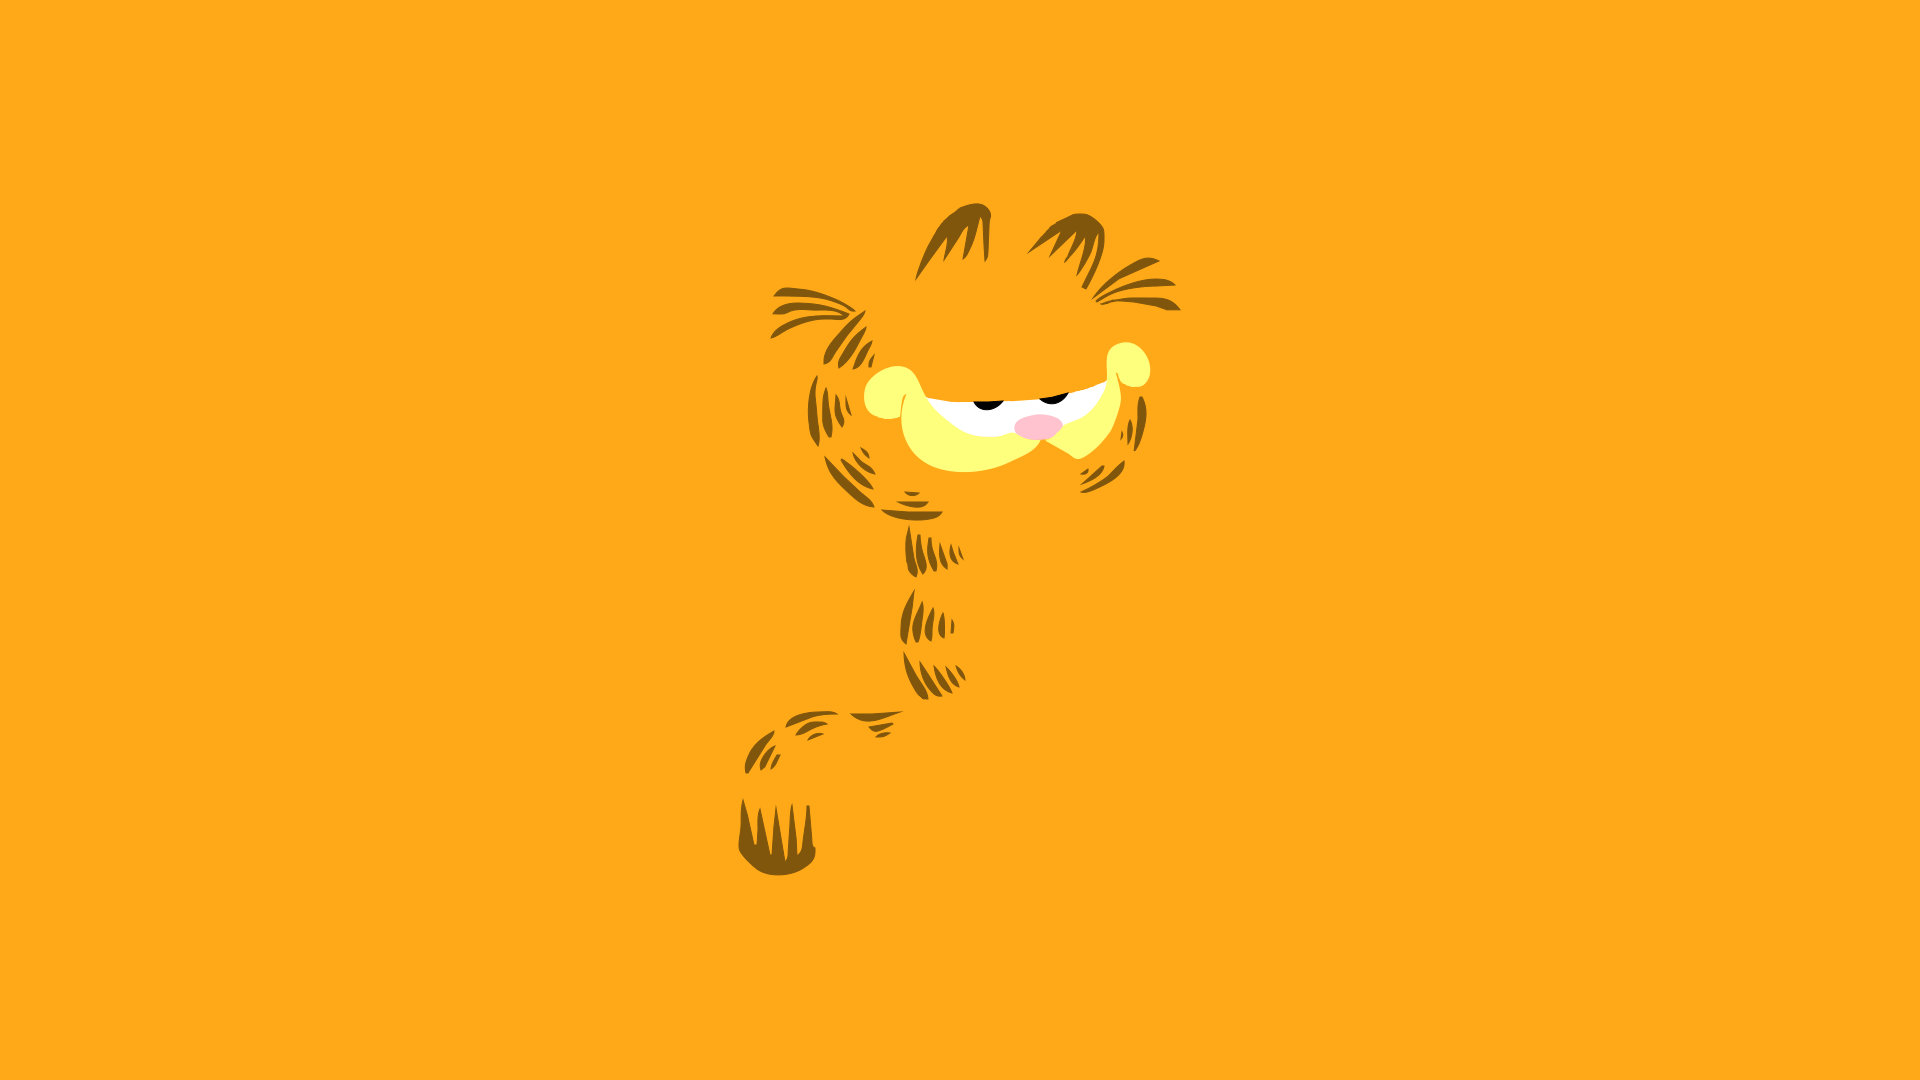 Garfield Background